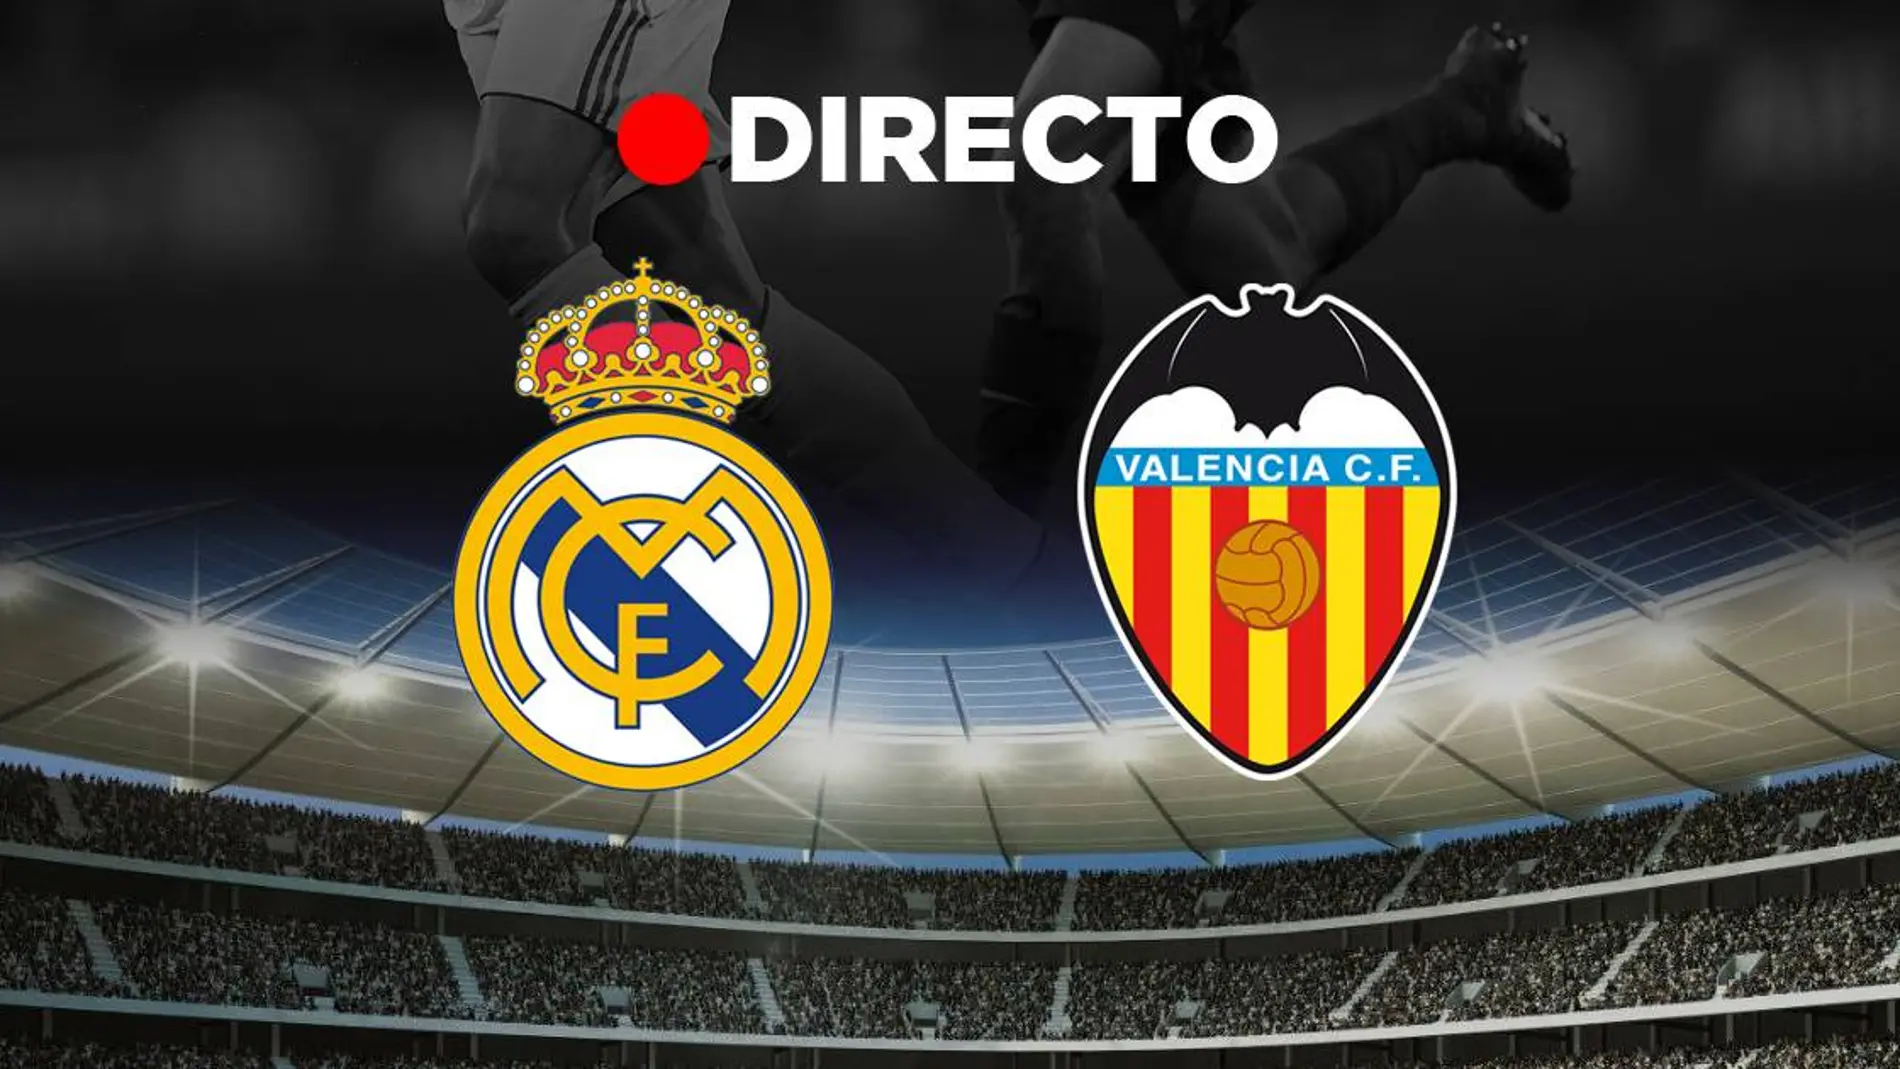 Real Madrid - Valencia: Resultado del partido de fútbol de hoy, EN DIRECTO